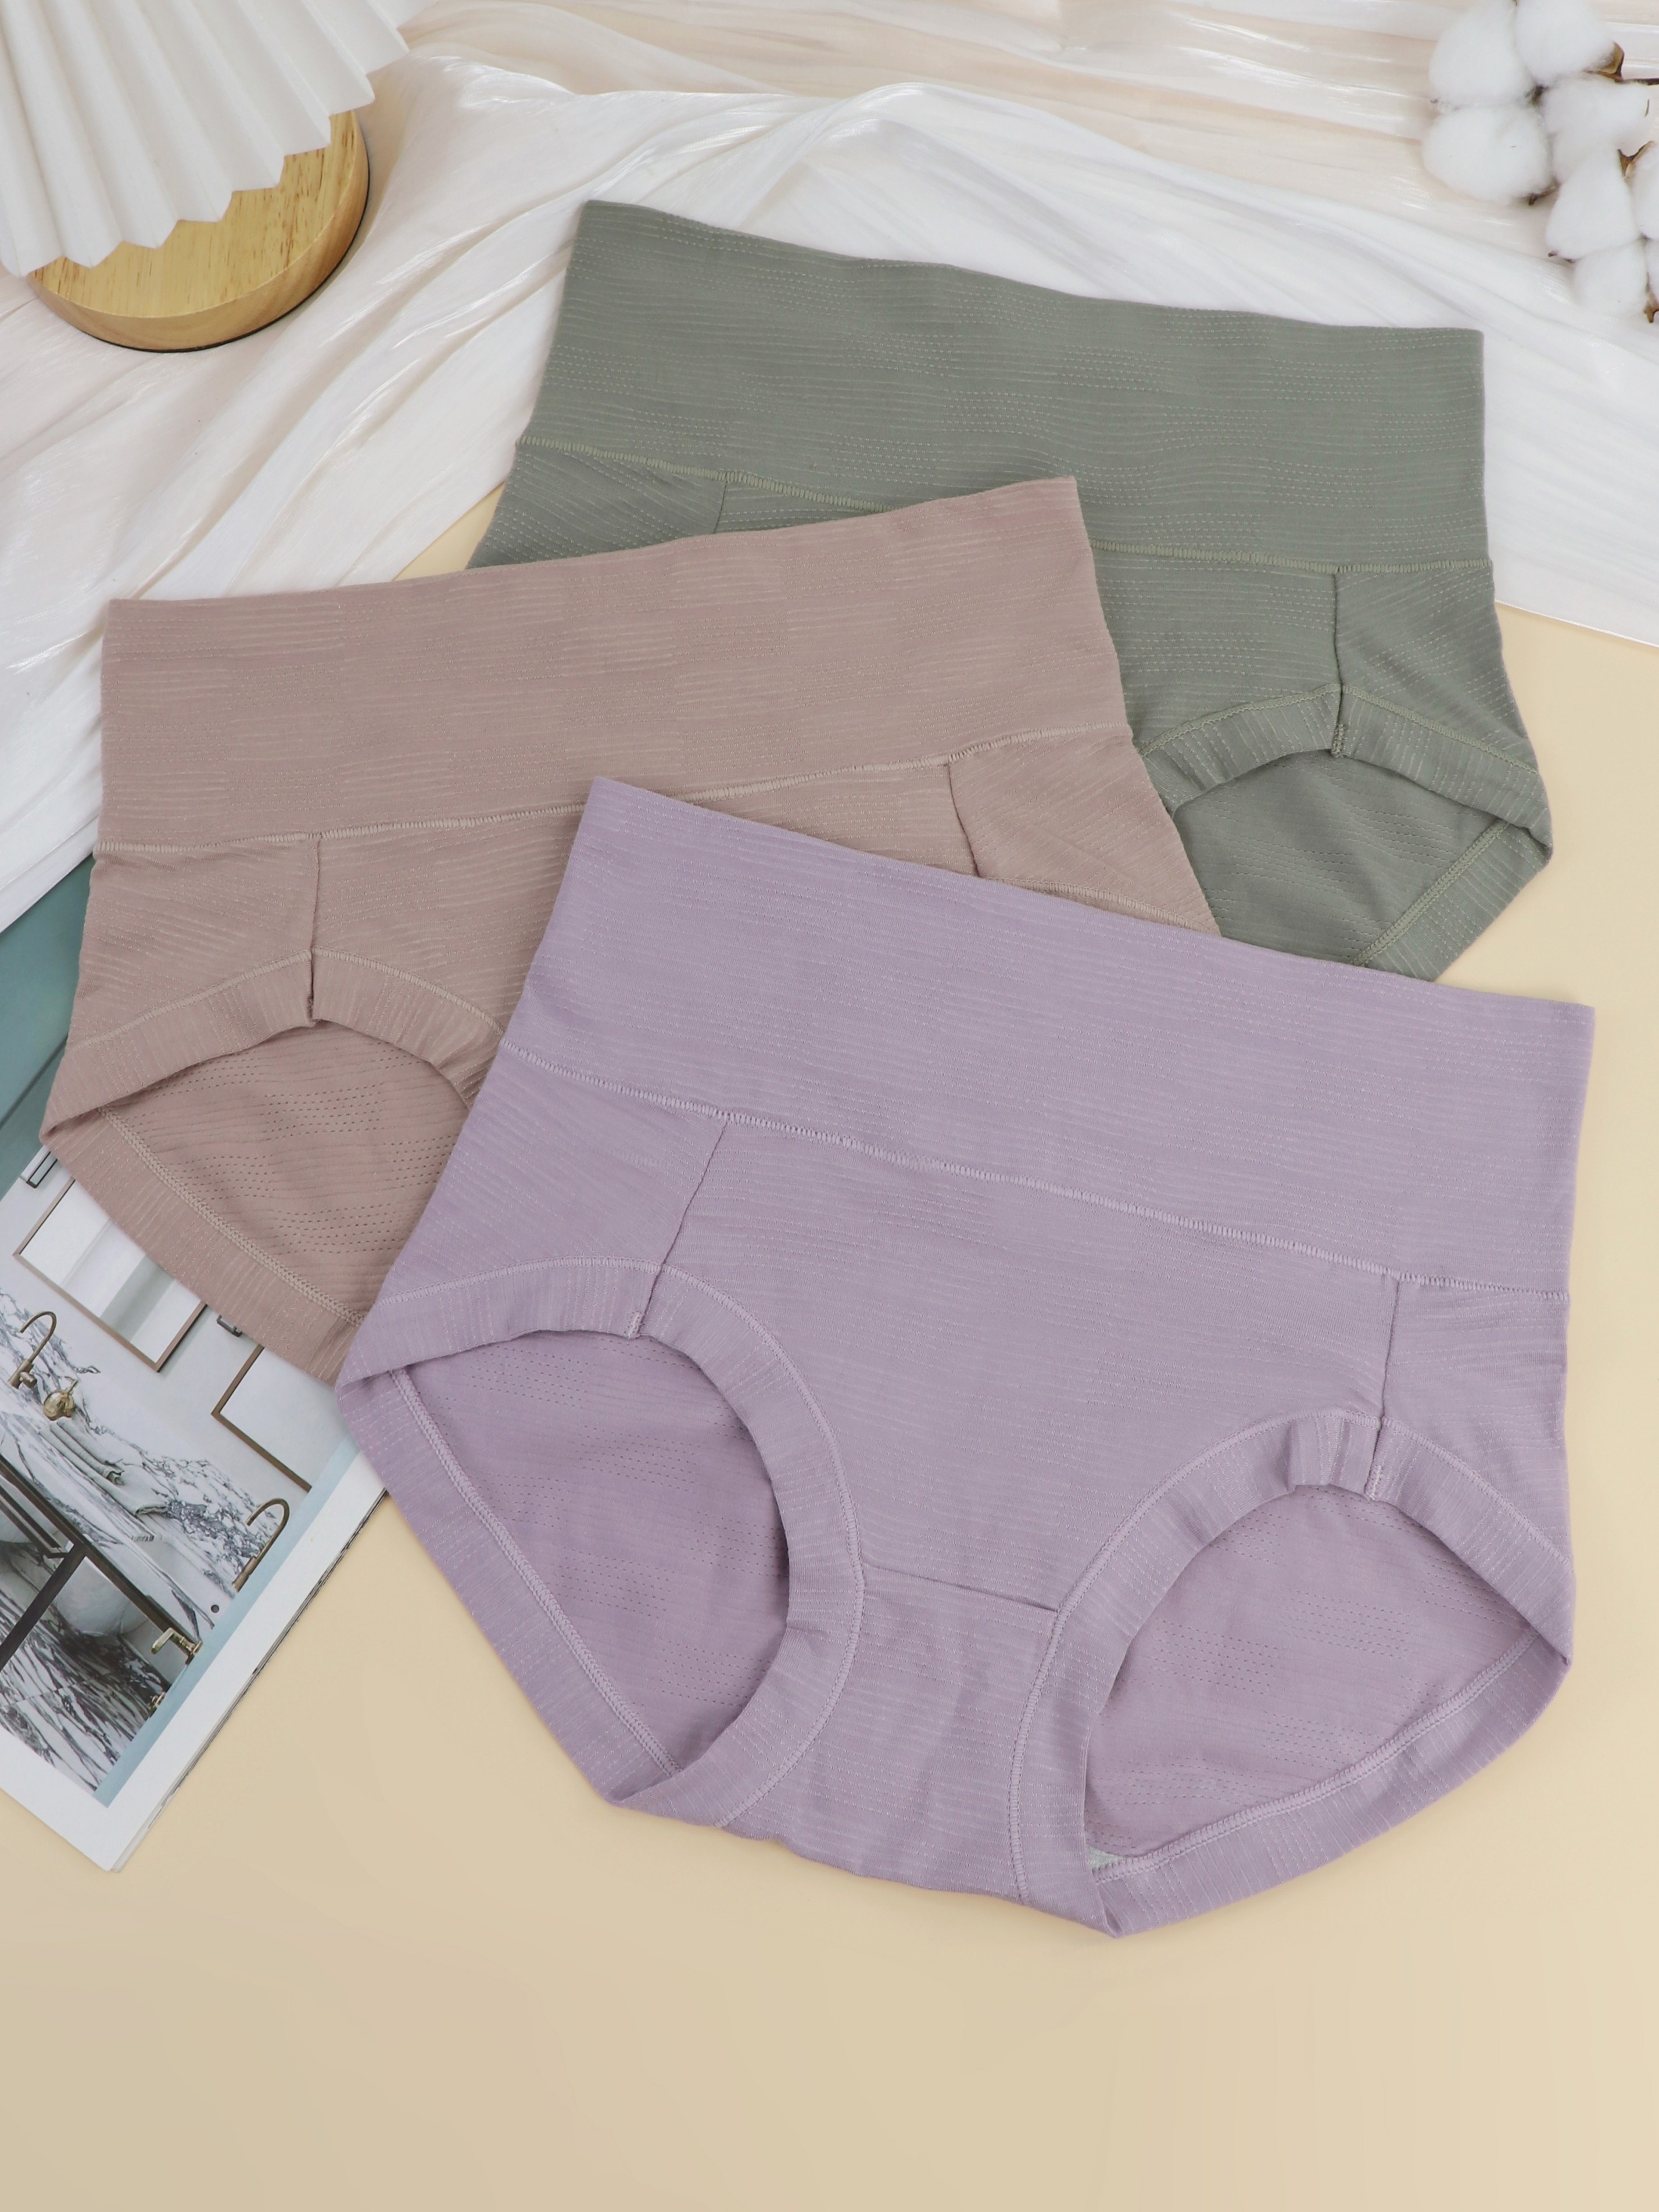 Wealurre Womens Comfort Cotton High Waist Underwear